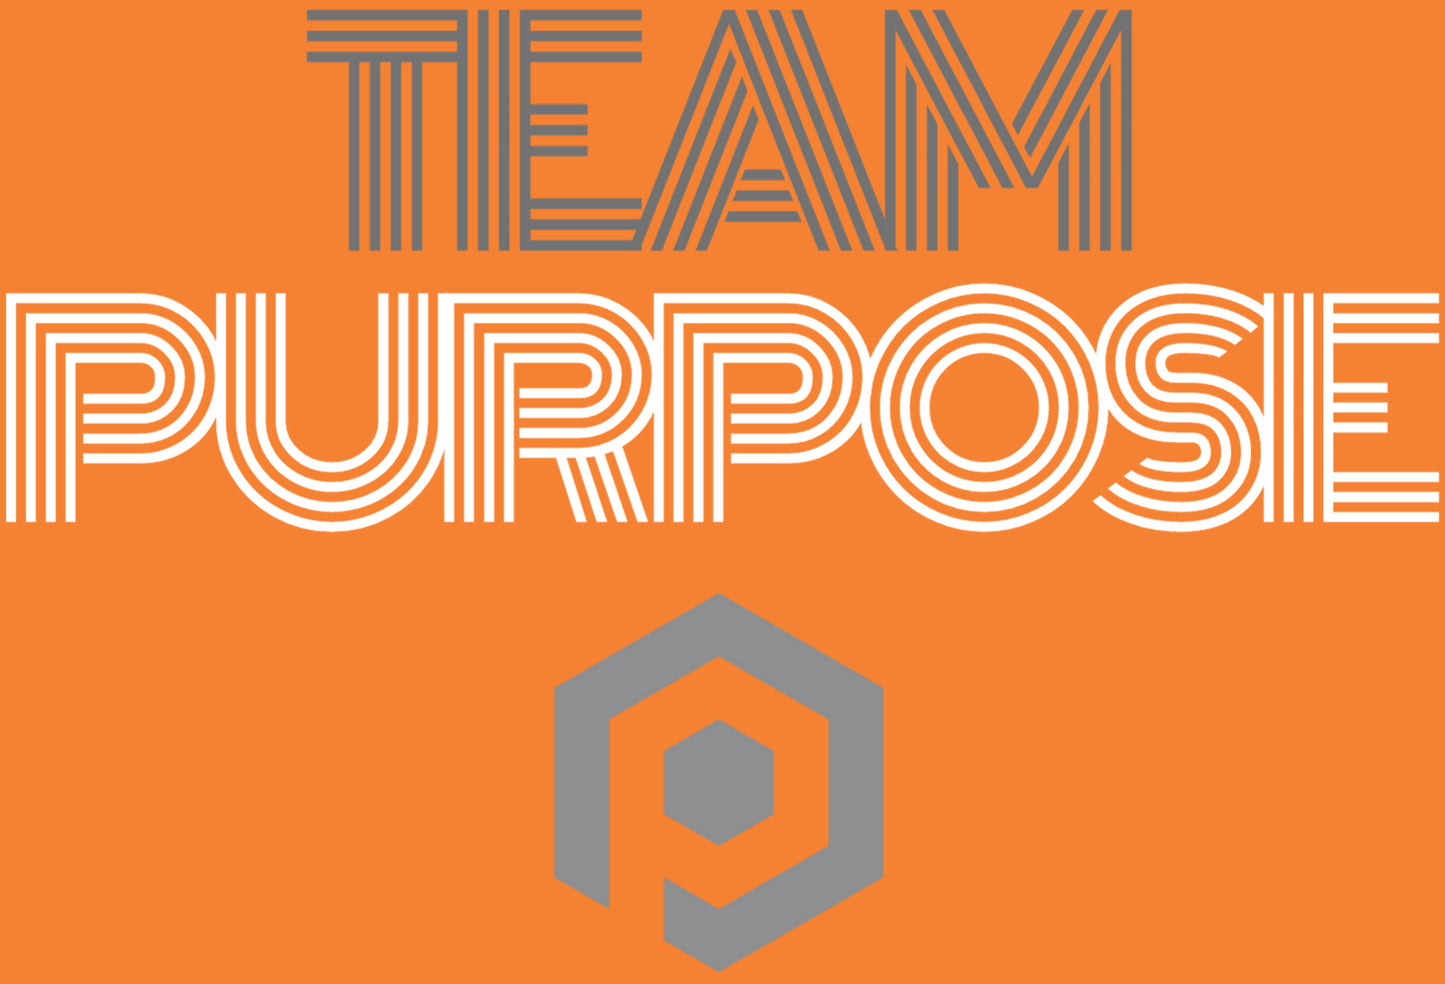 Team Purpose